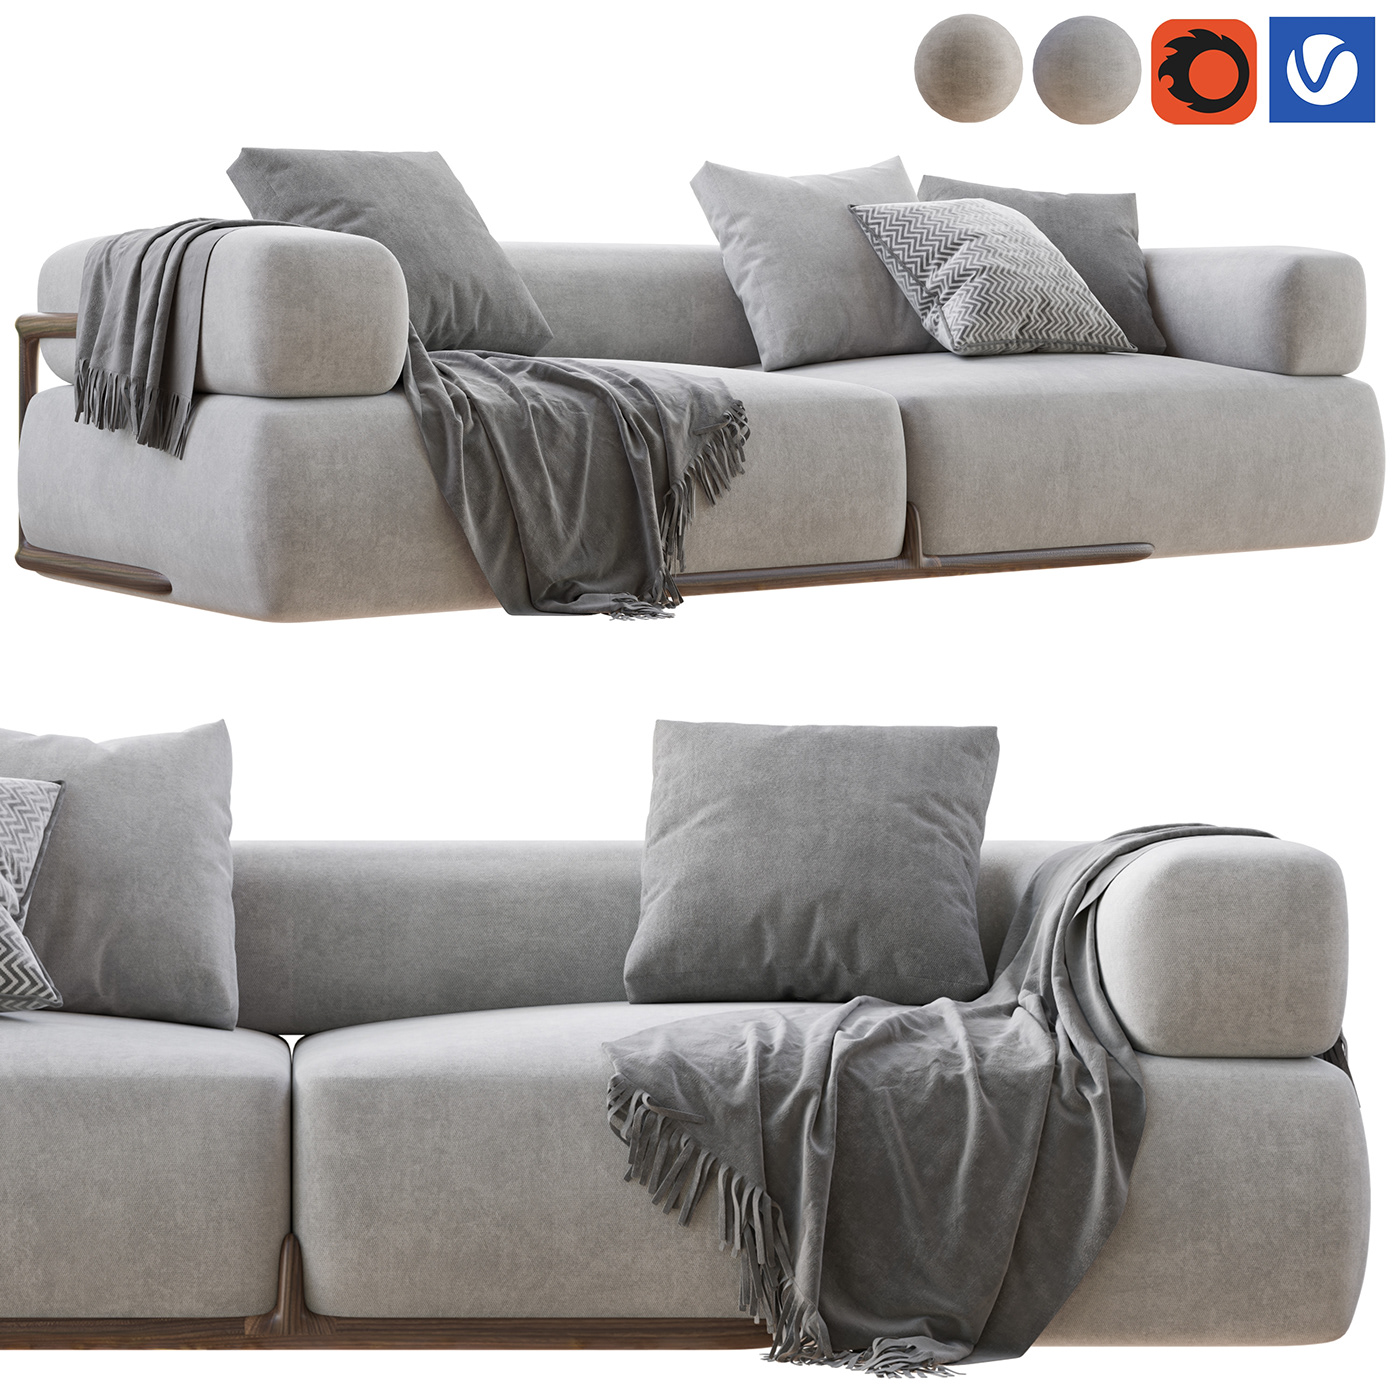 #sofa #3drender #archviz #interiordesign #3dmodel   #3dmaxvray #3dmodeling #3dmodelservices #3dobject #porada